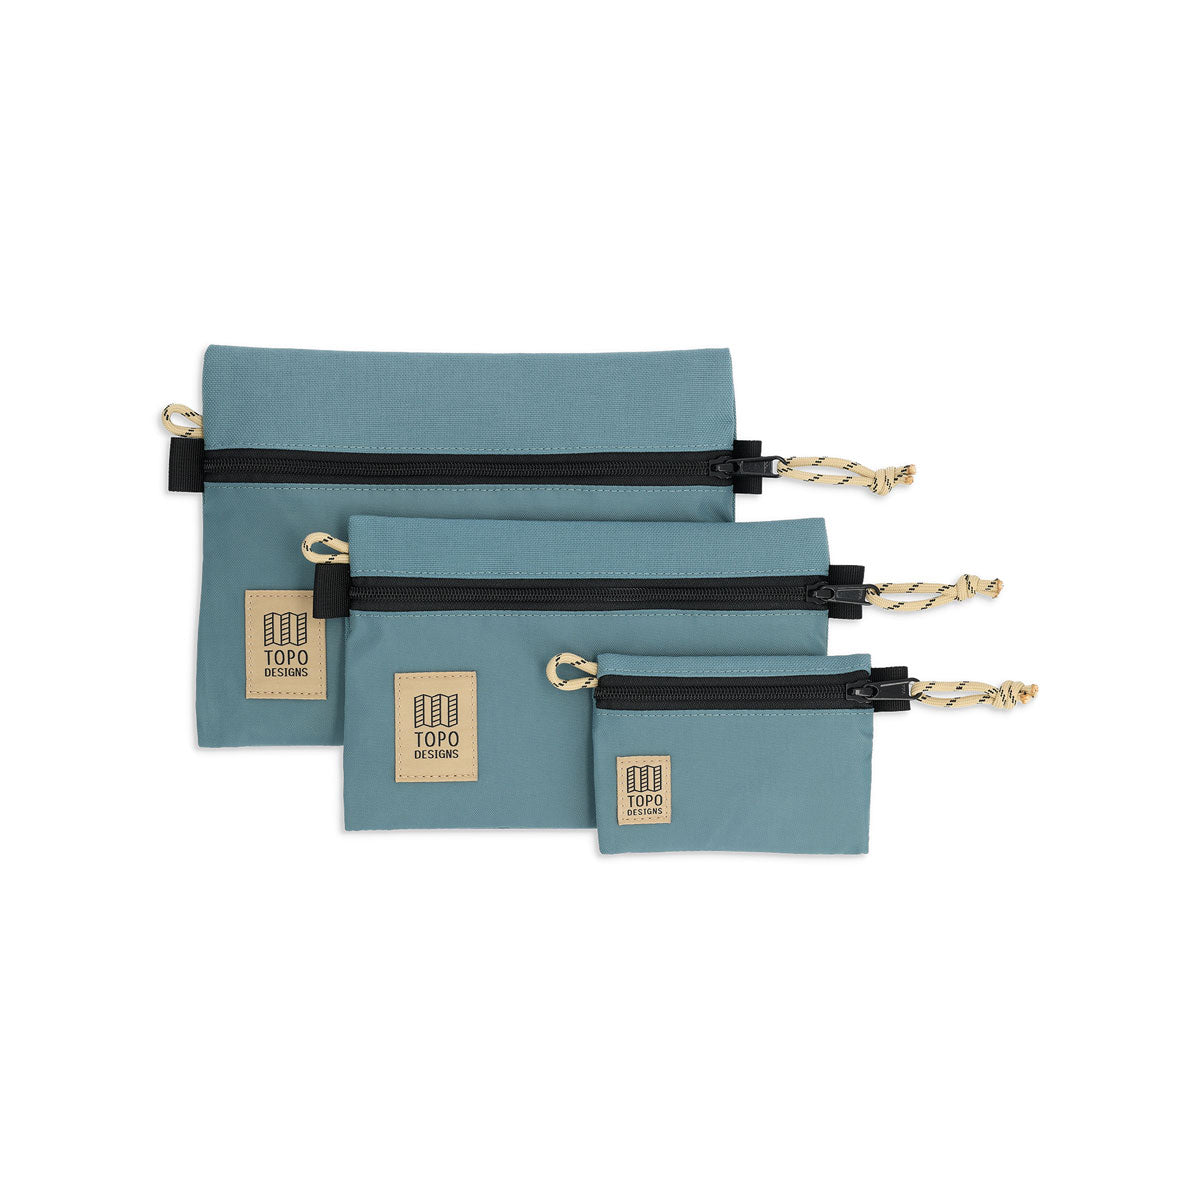 Topo Designs : Accessory Bag : Sea Pine/Sea Pine